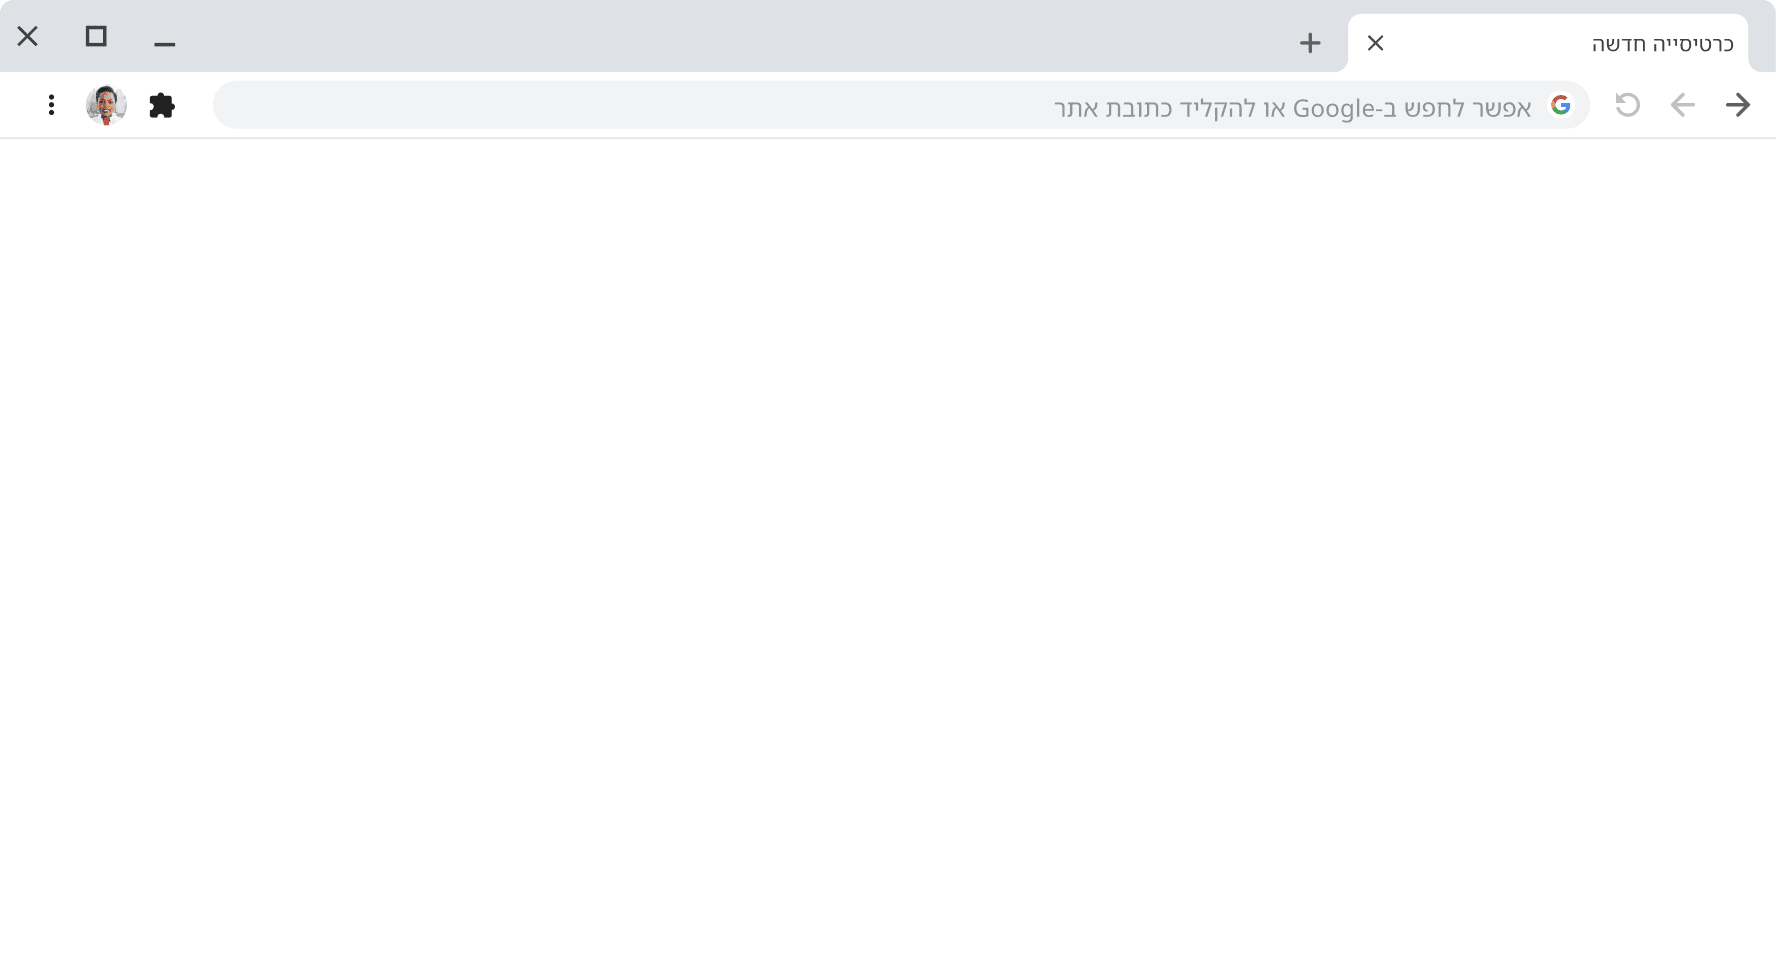 חלון של דפדפן Chrome עם סרגל כתובות ריק.